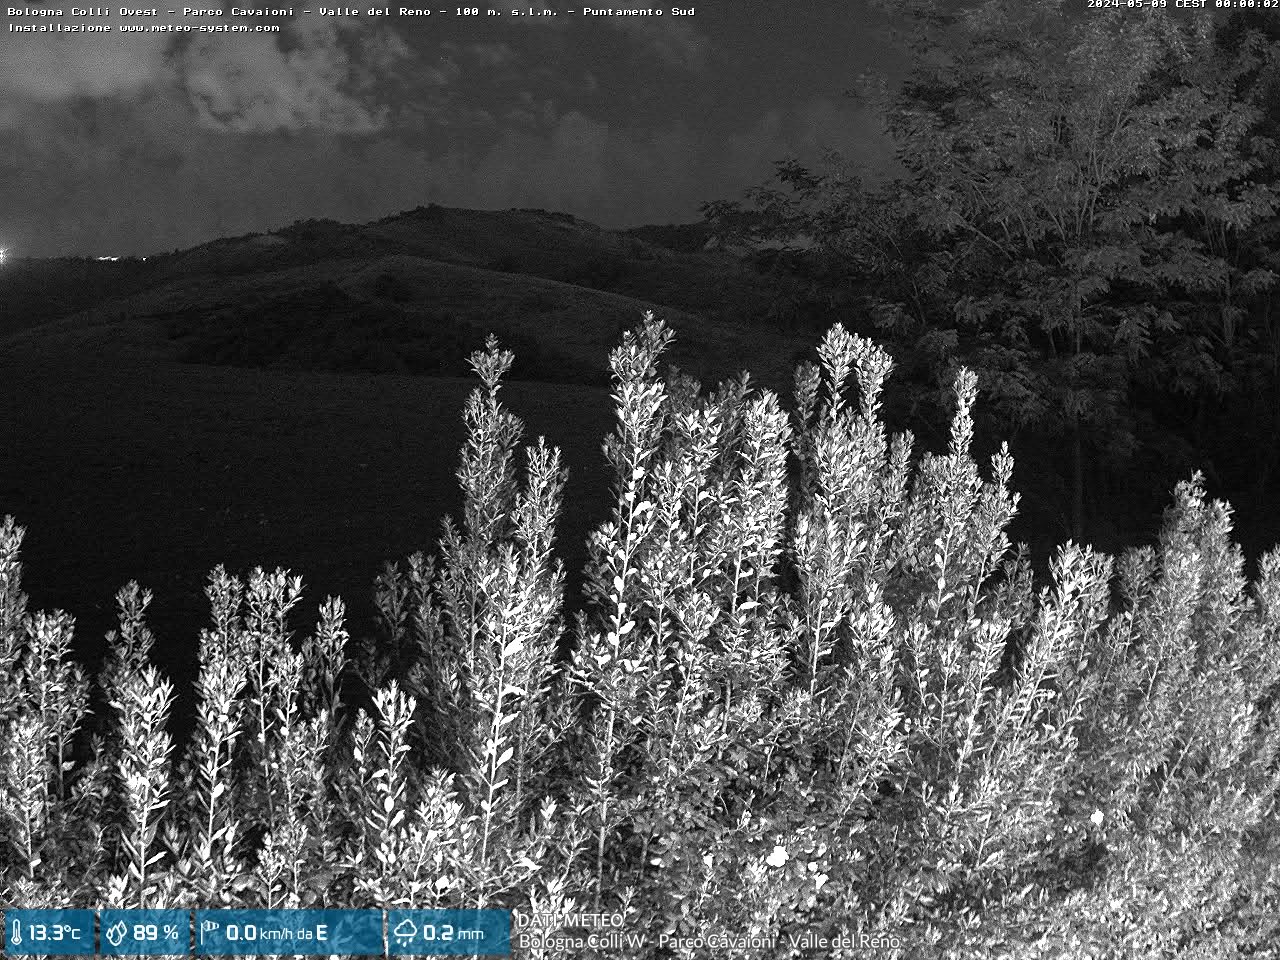 webcam Bologna Colli W - Parco Cavaioni - Valle del Reno (BO)